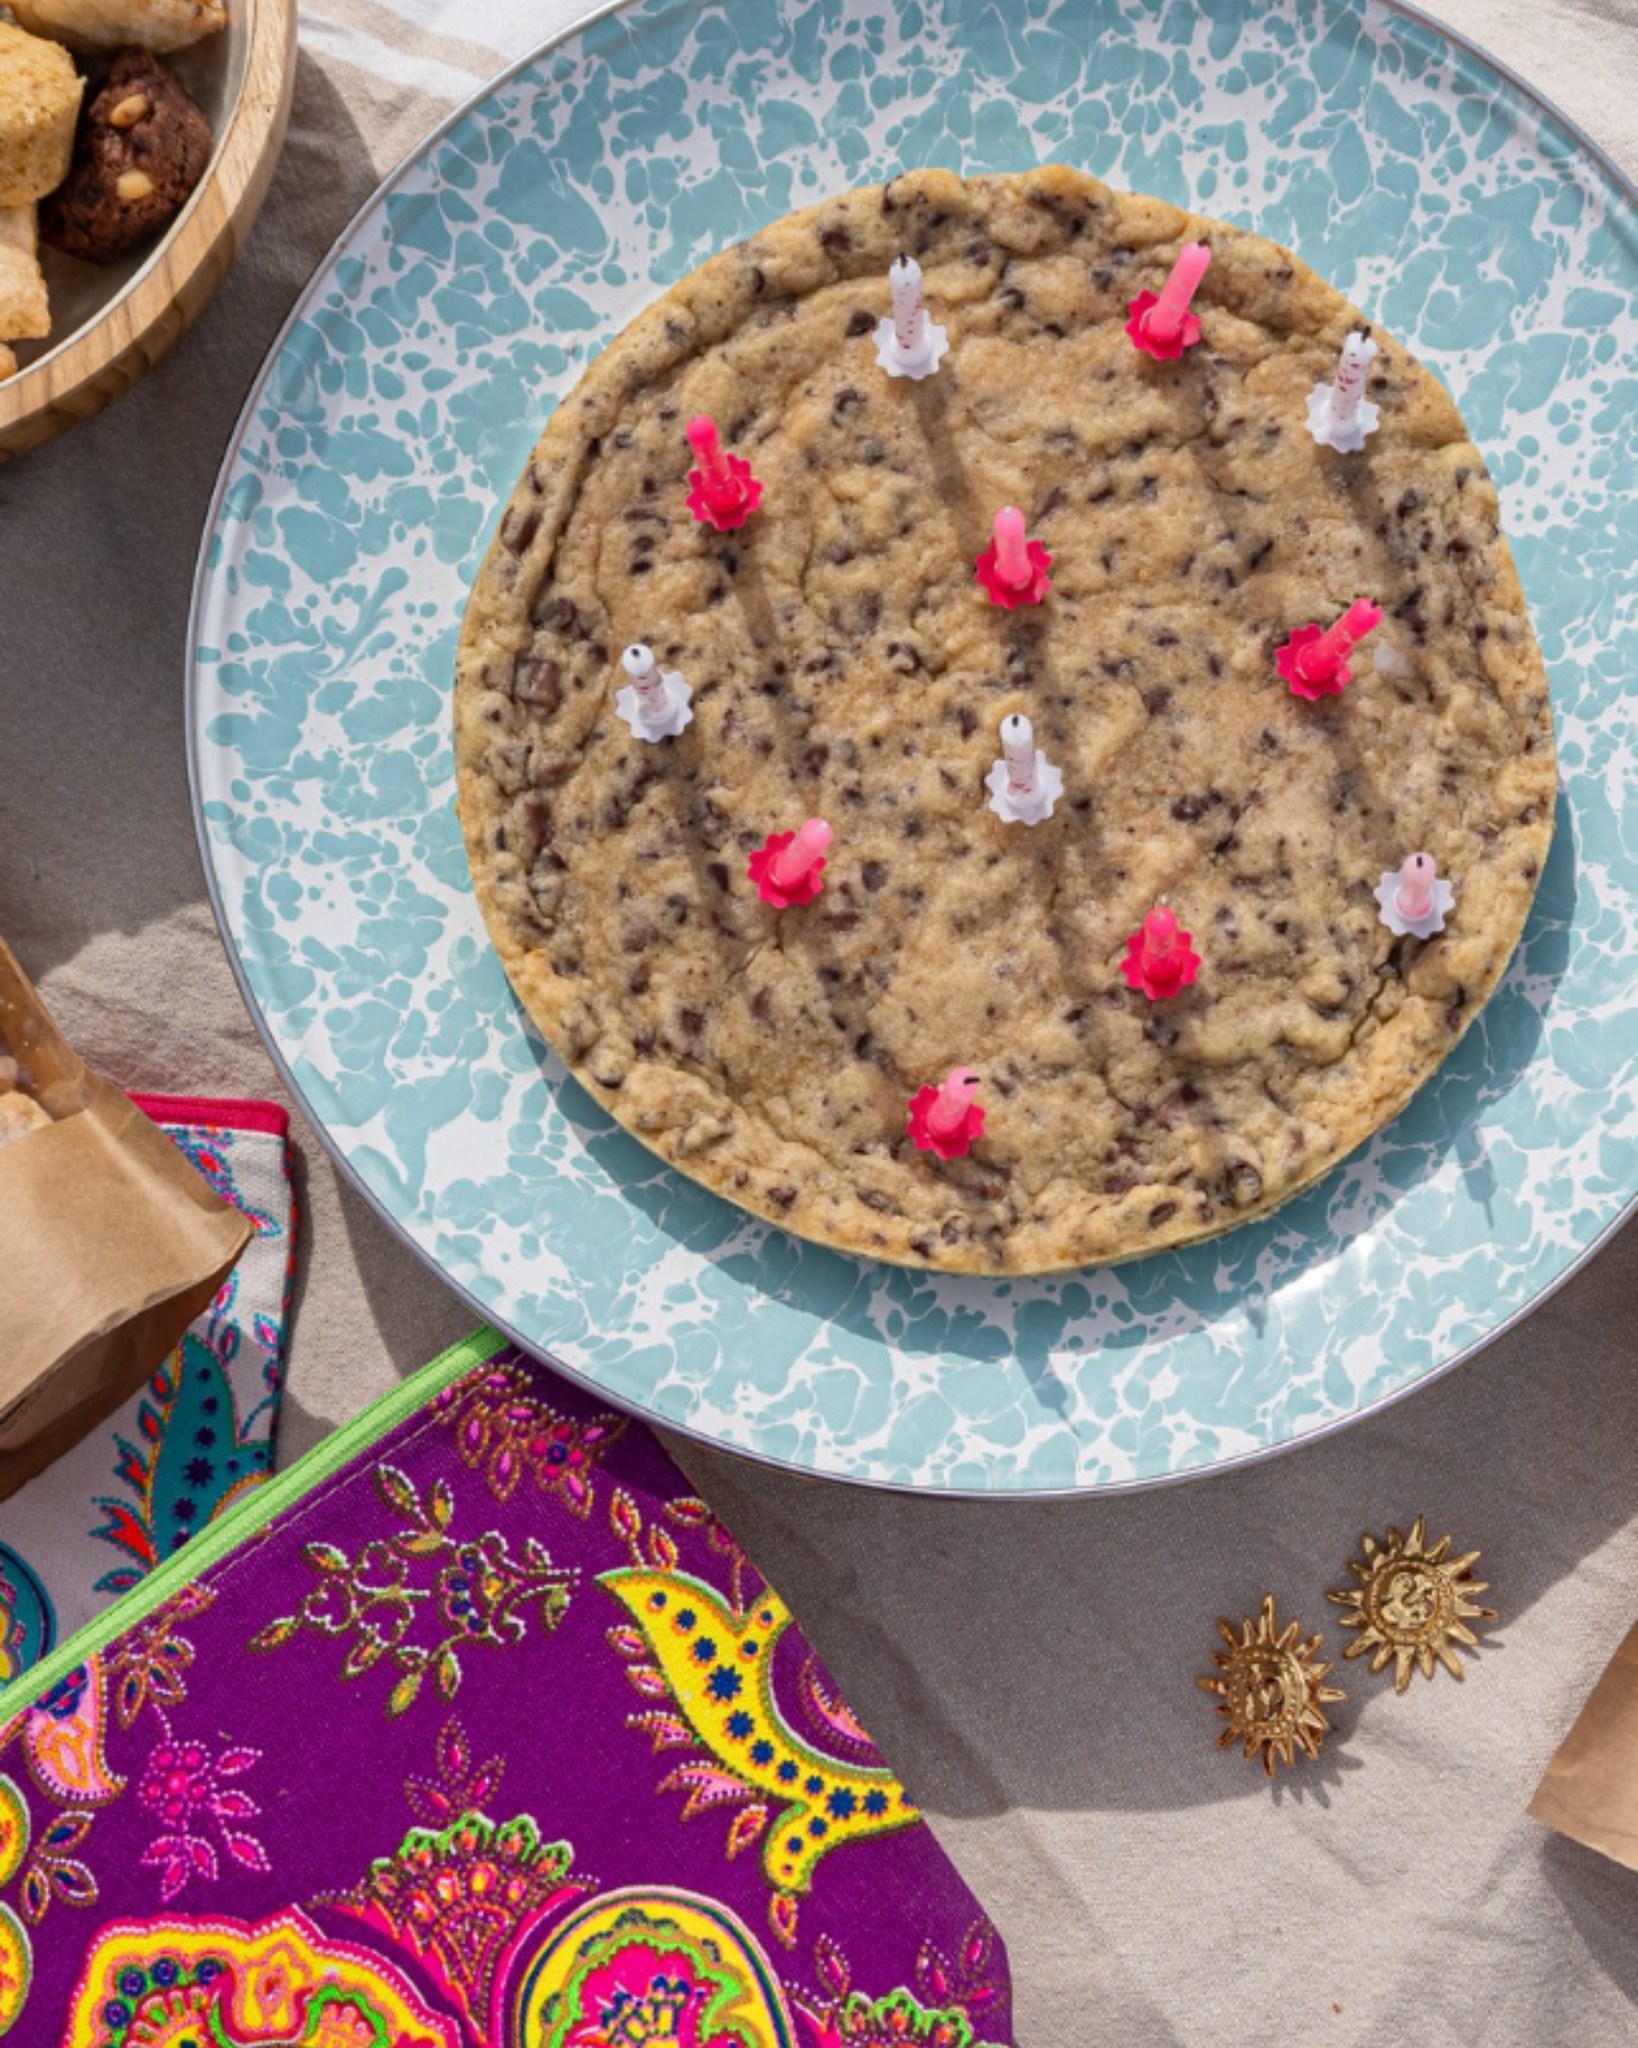 Et si l’on cassait les codes du gâteau d’anniversaire classique ? Soufflez vos bougies sur nos Cookies XXL ! 🎂

🍪 Faits maison à Gémenos (13)
📍Disponibles dans plusieurs points de vente
💌 Plus d’infos sur notre site web (lien dans notre bio)

#CookiesGiraudon #Bonheur #CookiesAvecAmour #GourmandiseAuthentique #homemadewithlove #CookiesArtisanaux #FaitAvecAmour #Gémenos #CuisineArtisanale #marseille #MadeInFrance